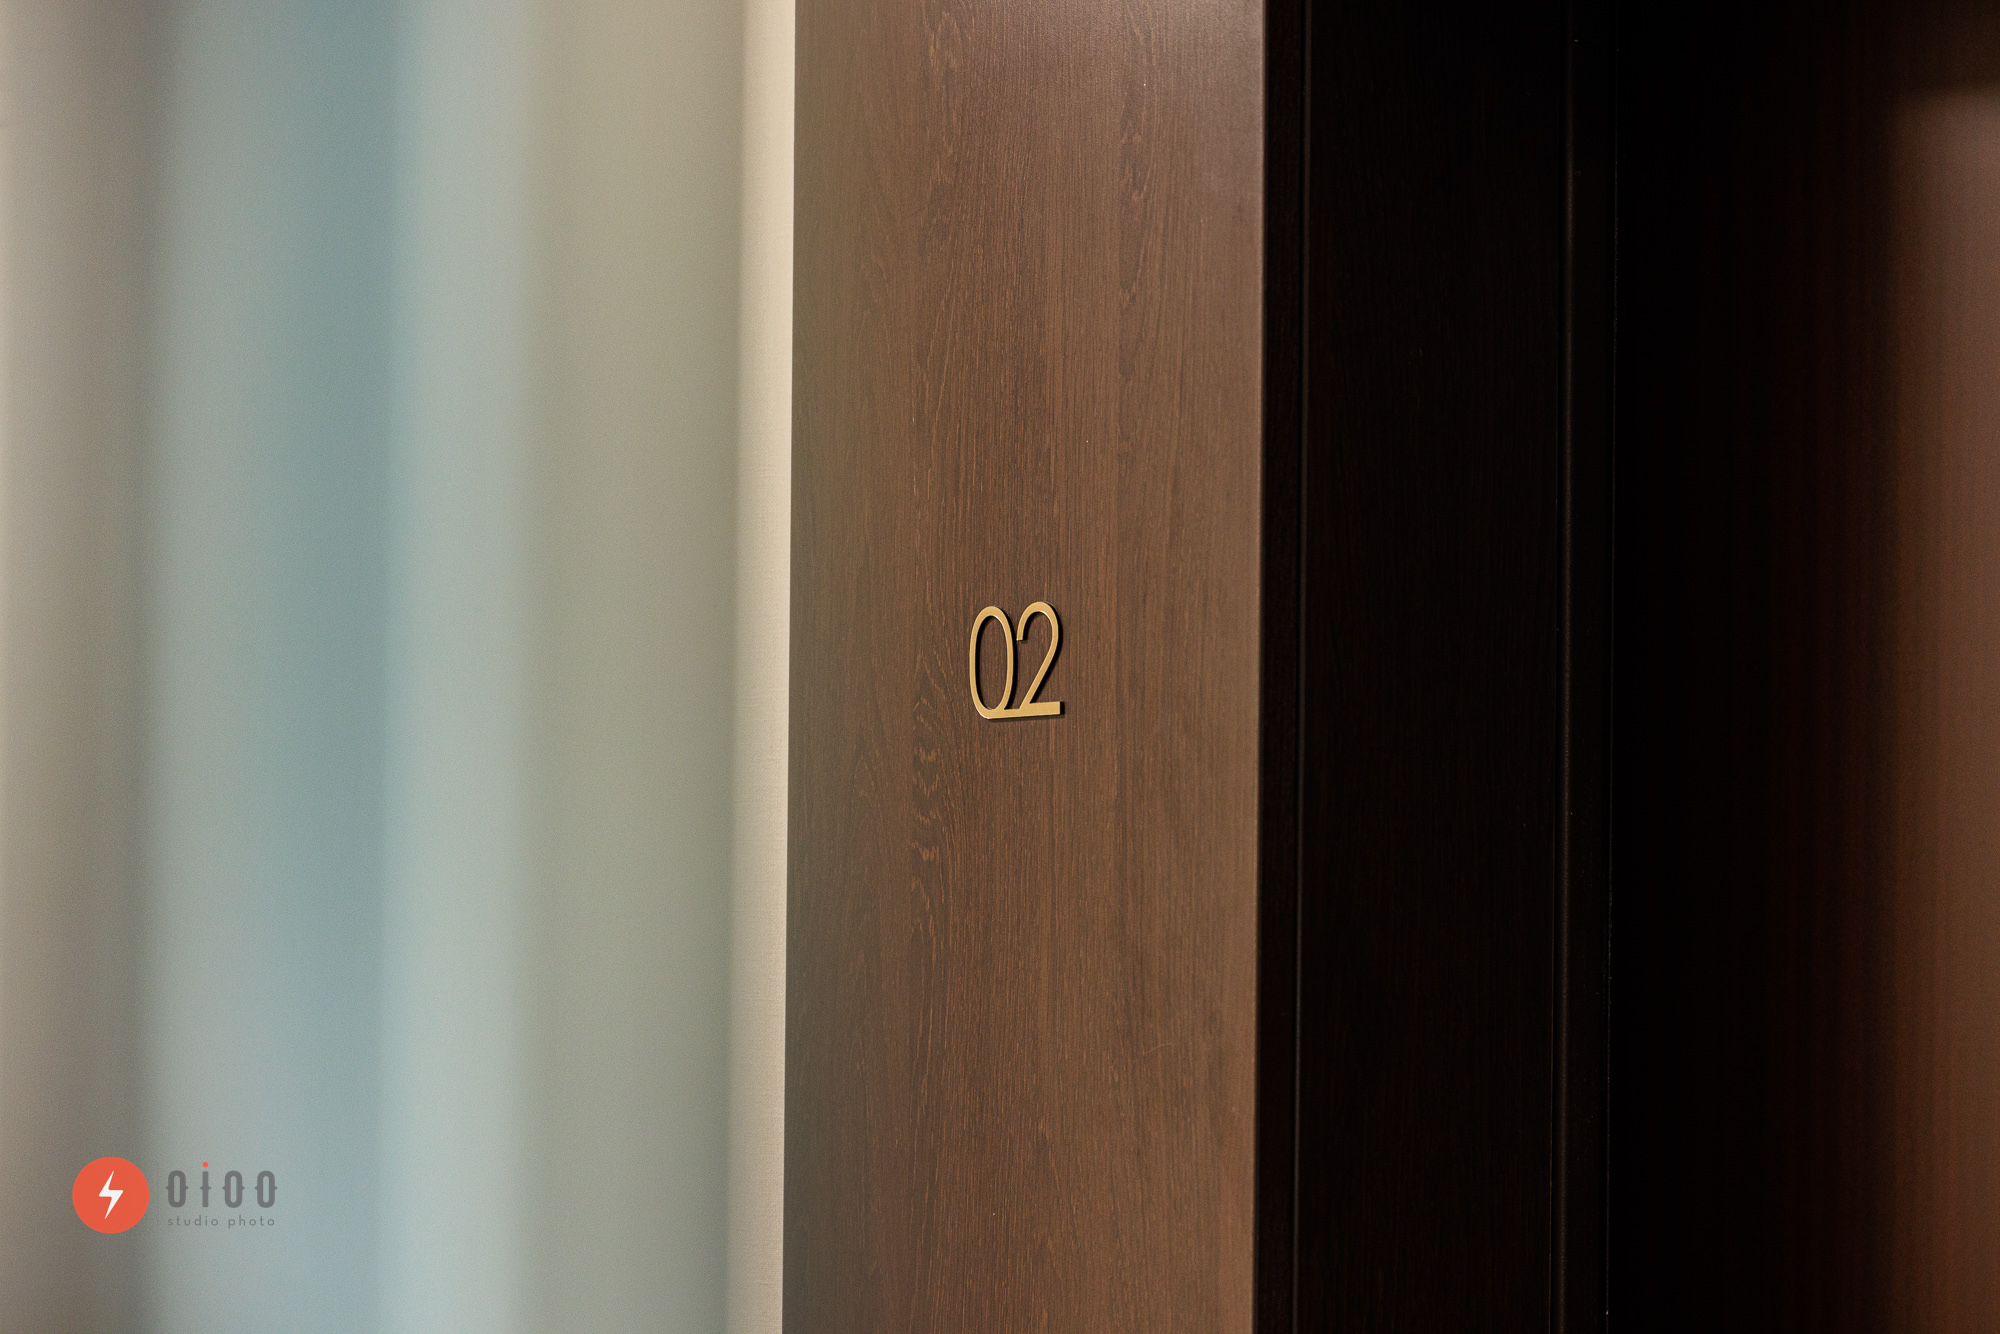 Photographie immobilière pour le groupe Lamotte à bordeaux par Oioo studio : vue d'un numéro d'appartement doré, apposé sur un mur en bois foncé